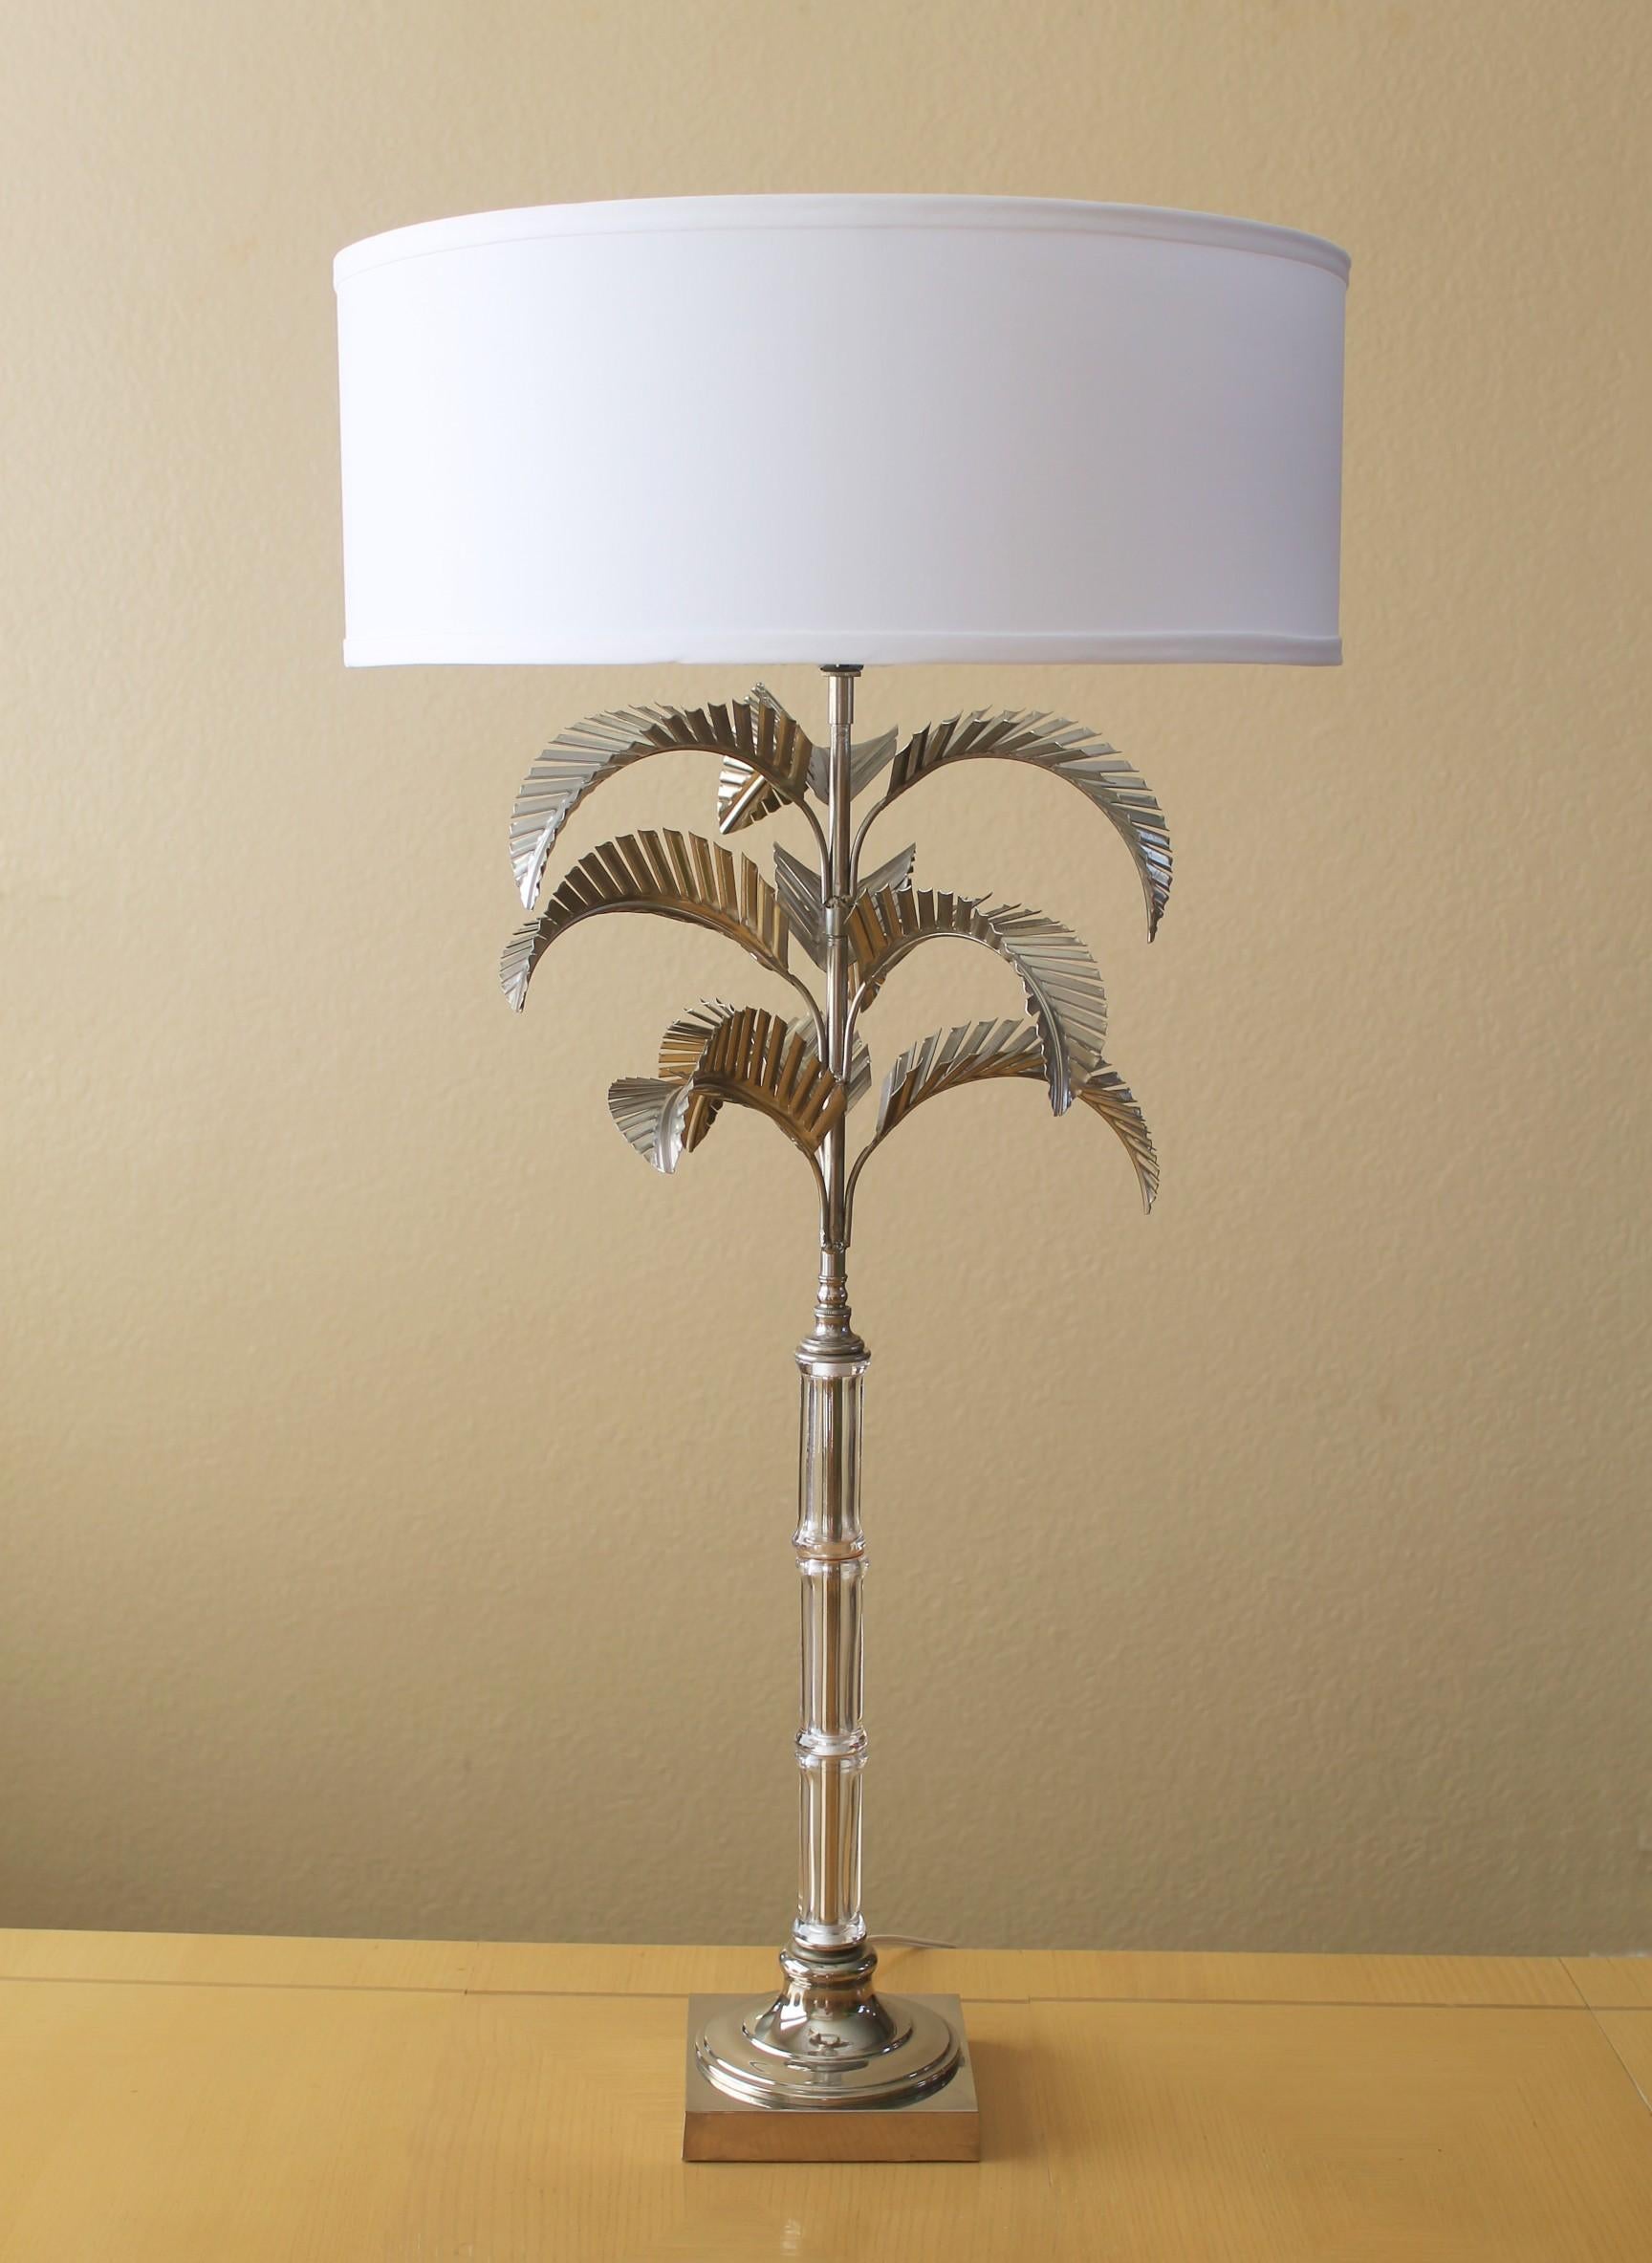 MAGNIFICENT!


Monumental bearbeitetes Metall
Palm Tree Tischlampe
Von Chapman Manufacturing

Unglaubliches Design/One!
Minze!

Palm Beach Regency Dekor! 

Hier ist die unglaubliche und begehrte Palm Tree Tischlampe von Chapman Manufacturing. 